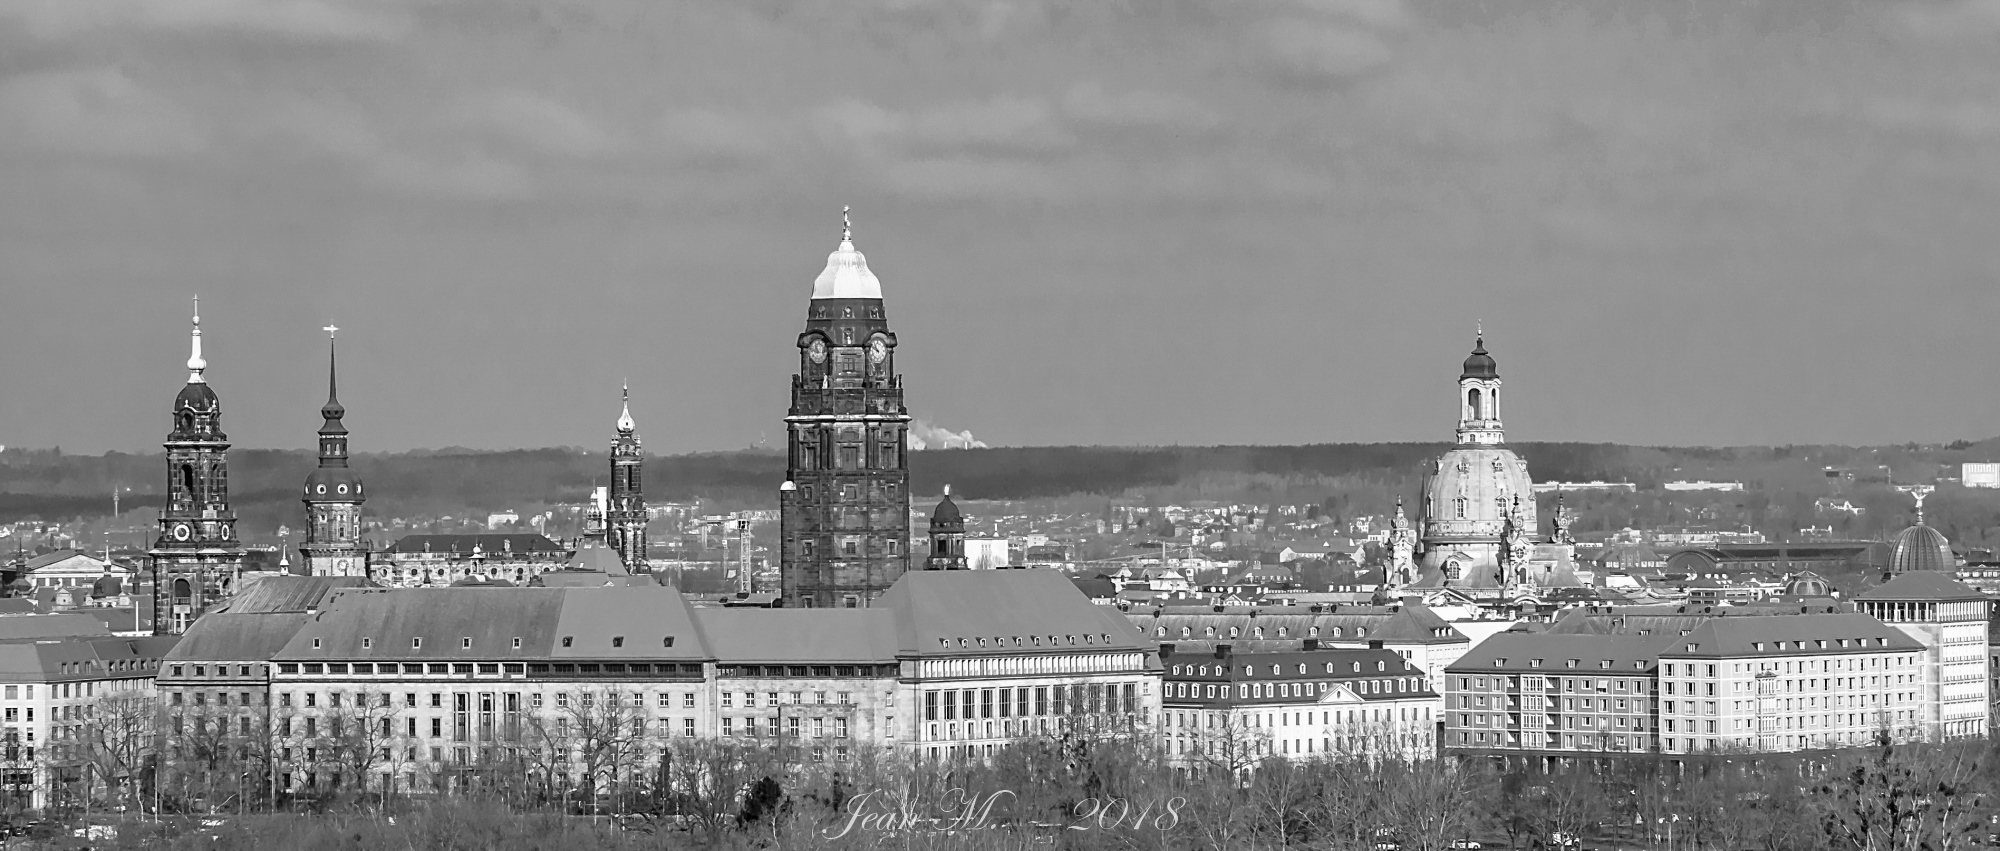 Scyline von Dresden